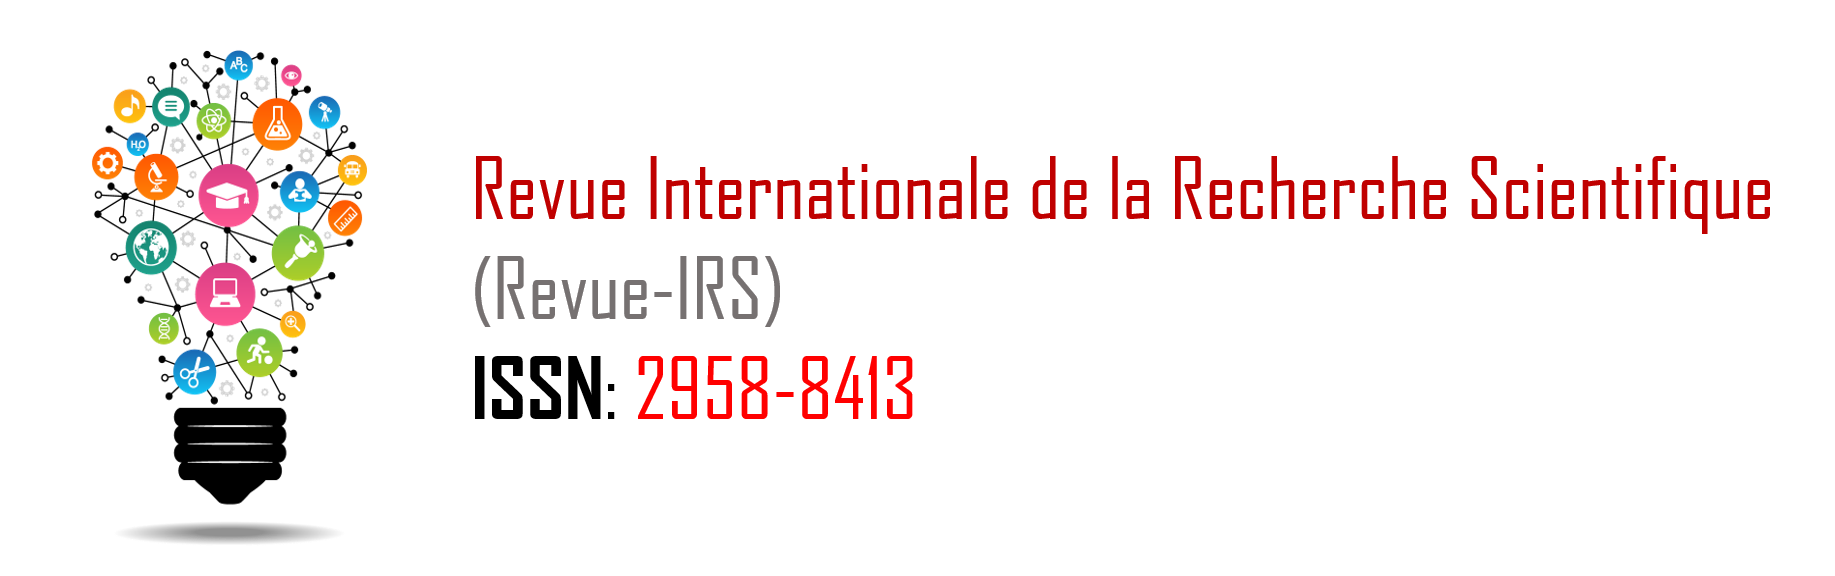 Logo RIRS